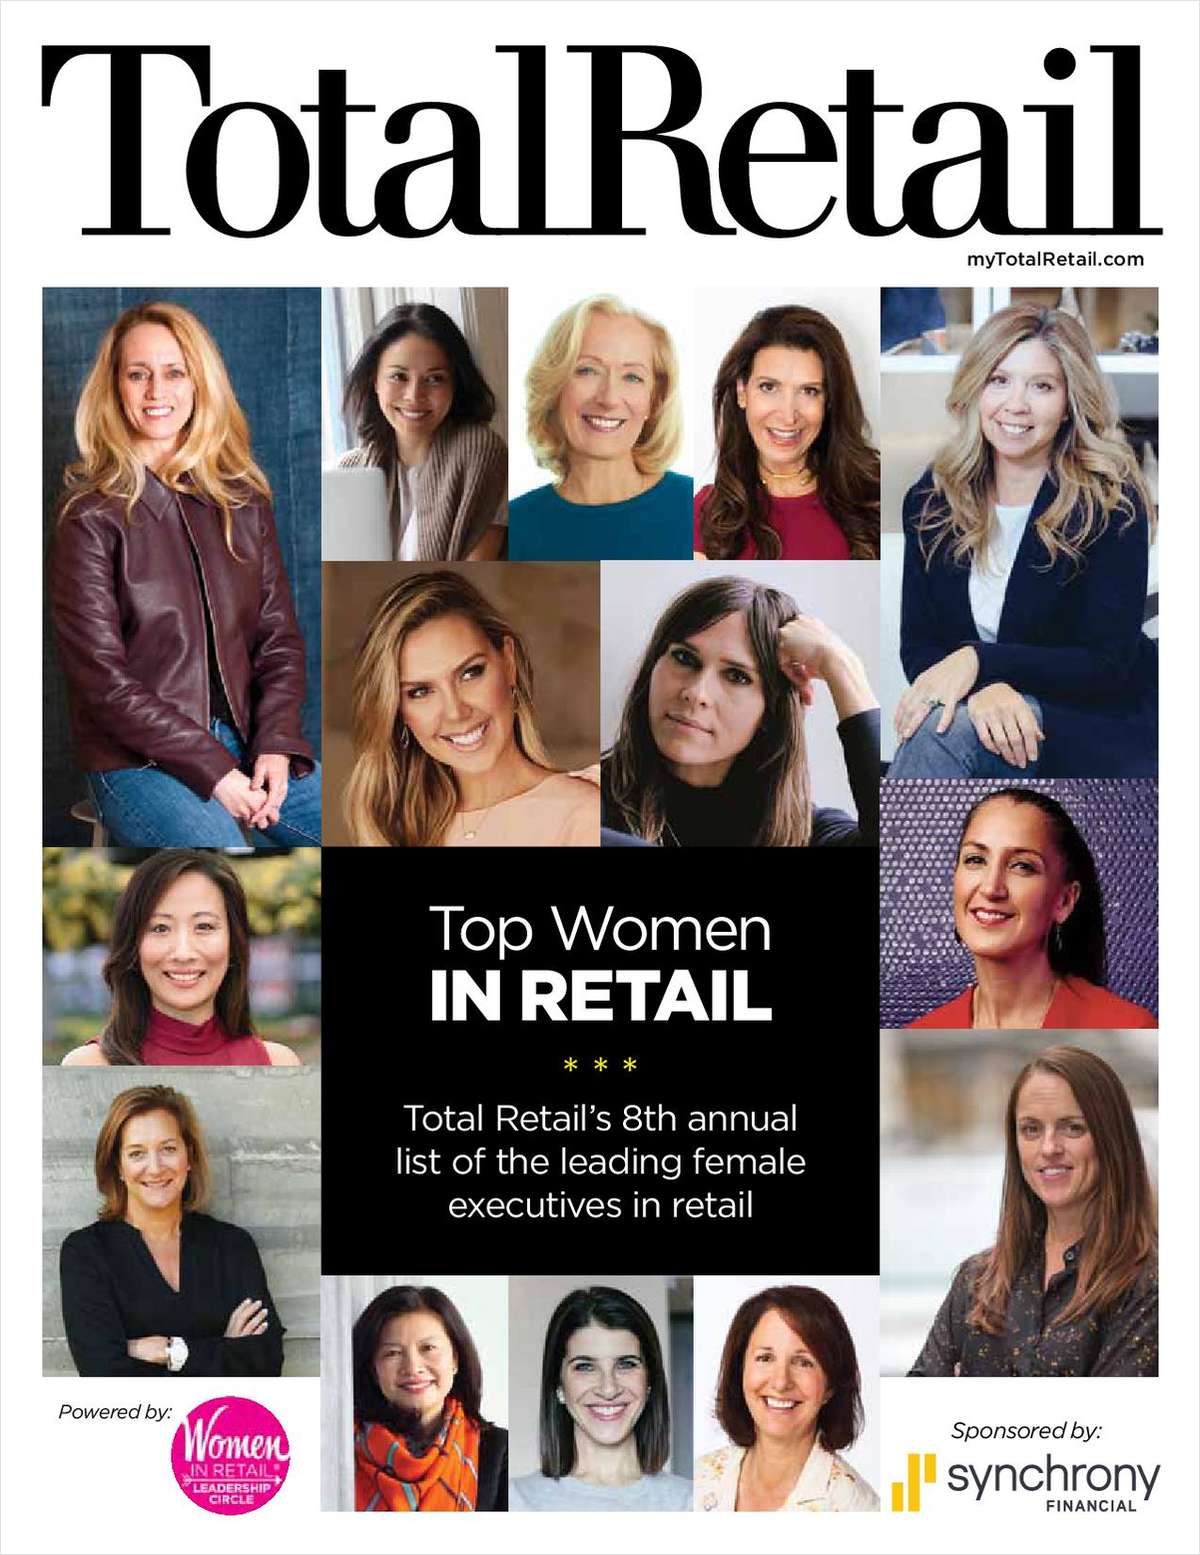 Top Women in Retail